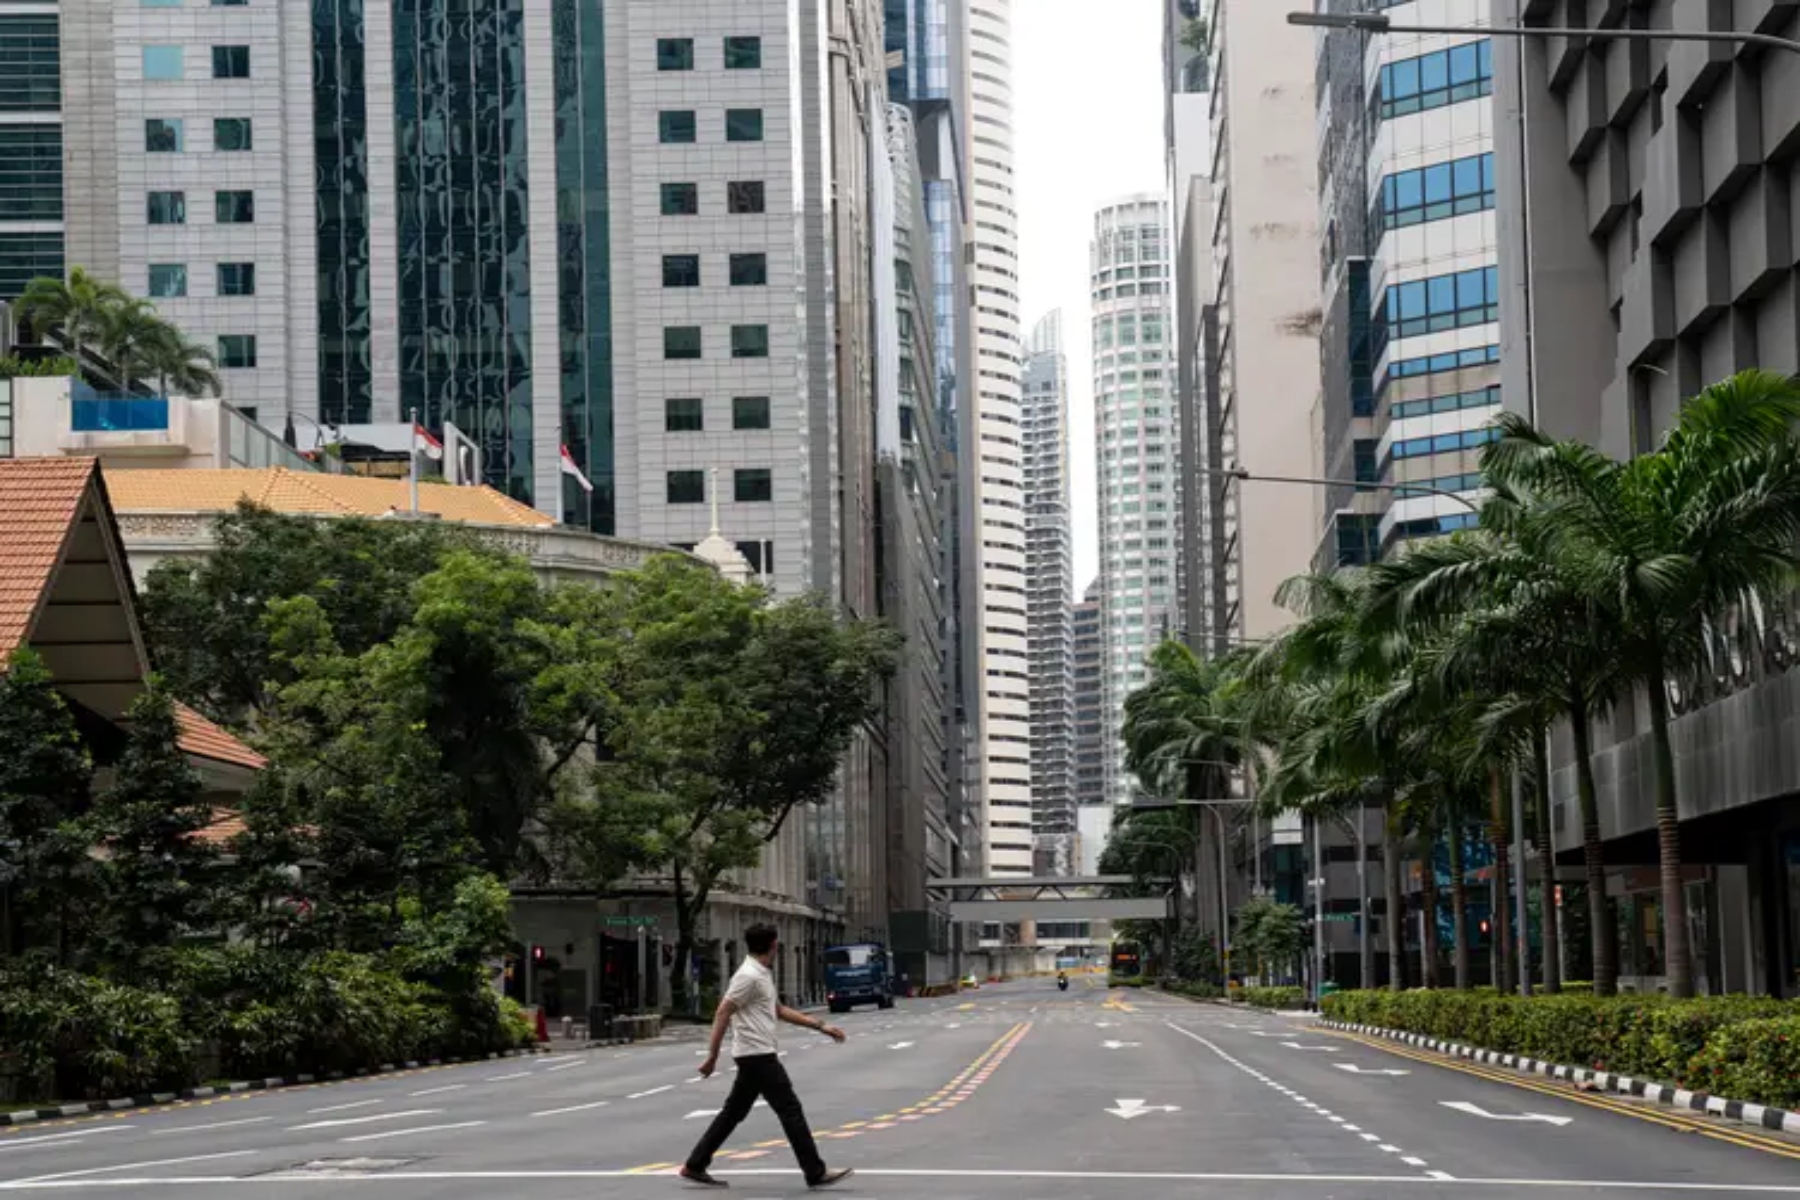 ΣΙγκαπούρη: 70% των κατοίκων θετικοί για τη συνολική ποιότητα ζωής μετά την πανδημία